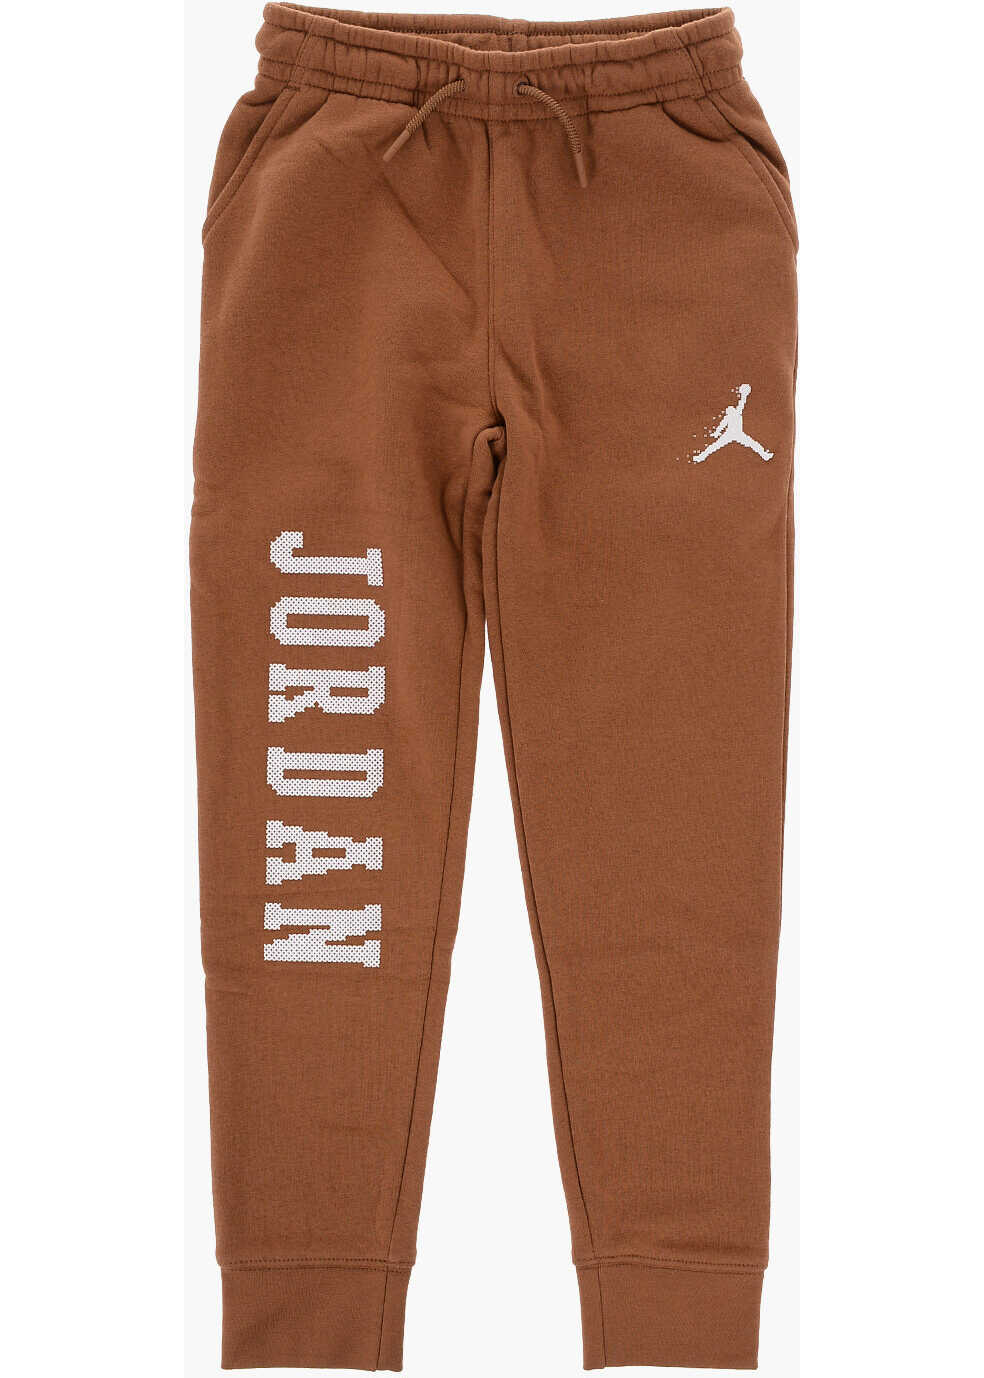 Nike Air Jordan Fleeced-Cotton Blend Mj Essentials Joggers Brown